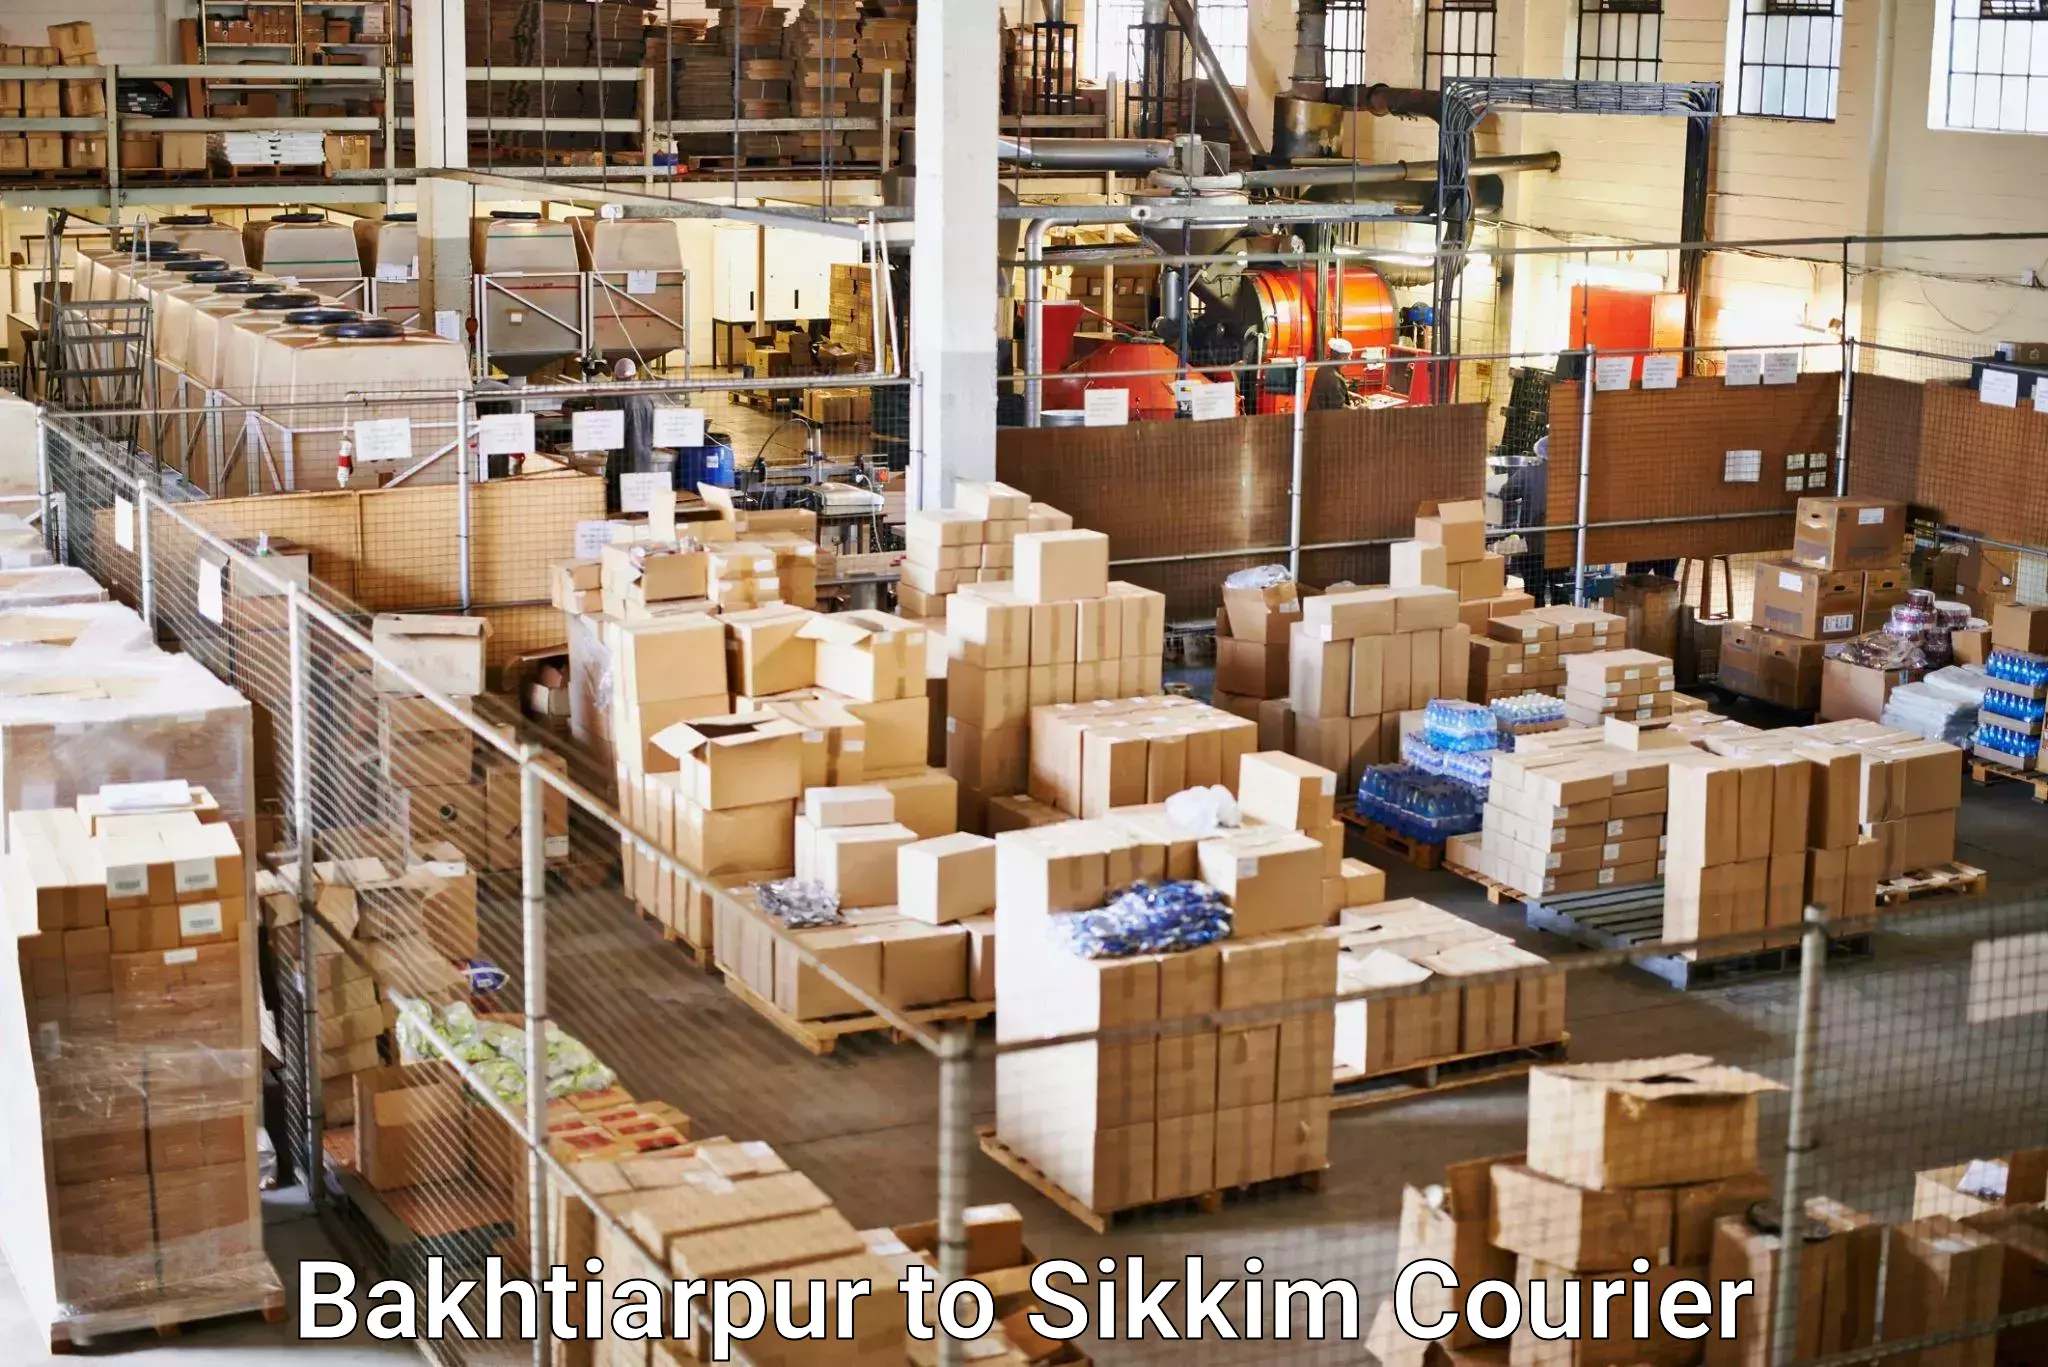 Courier service comparison Bakhtiarpur to South Sikkim